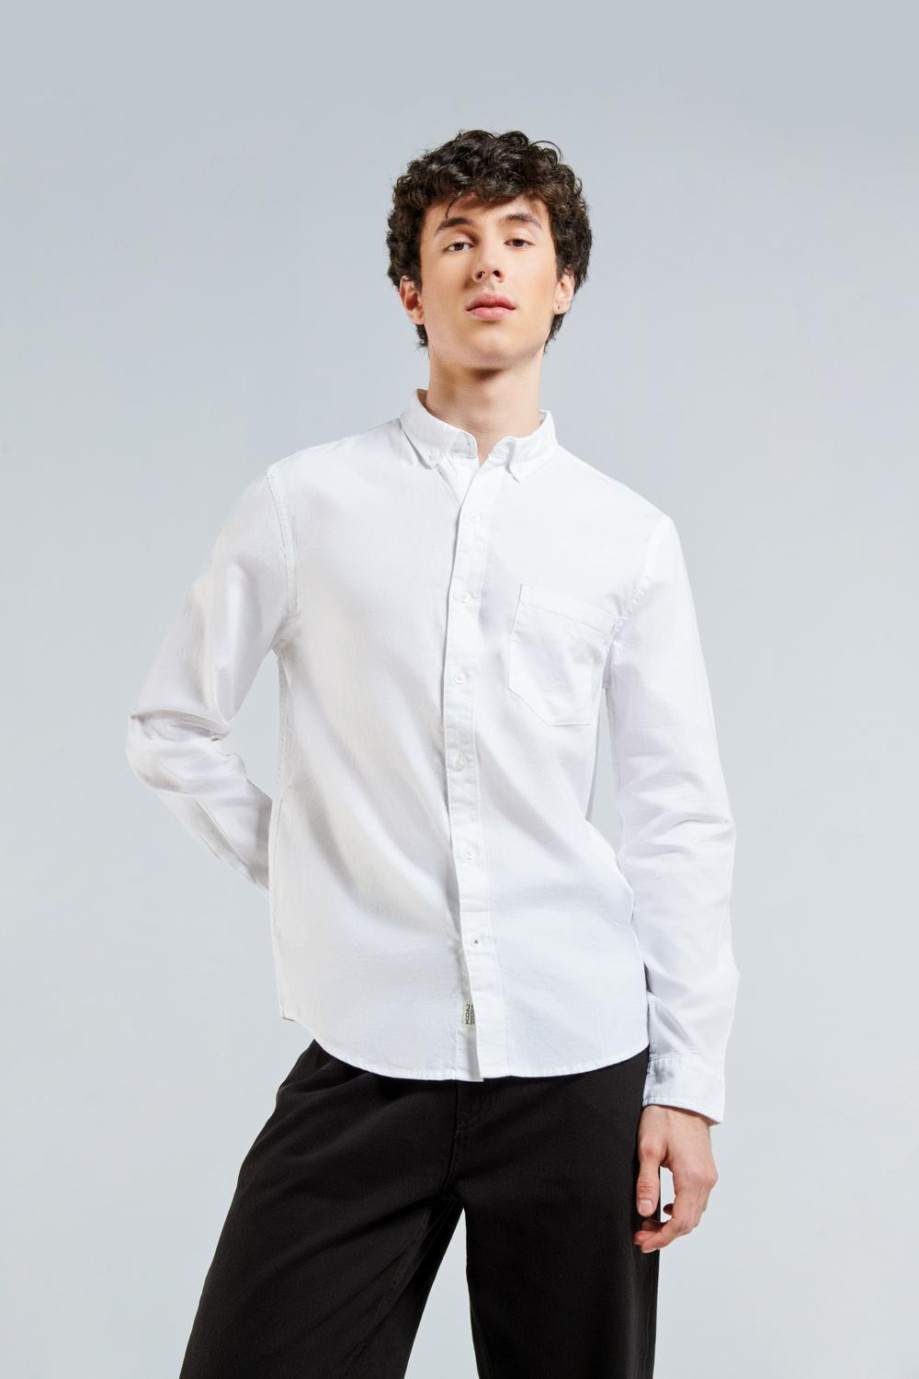 Camisa unicolor con bolsillo, cuello button y manga larga